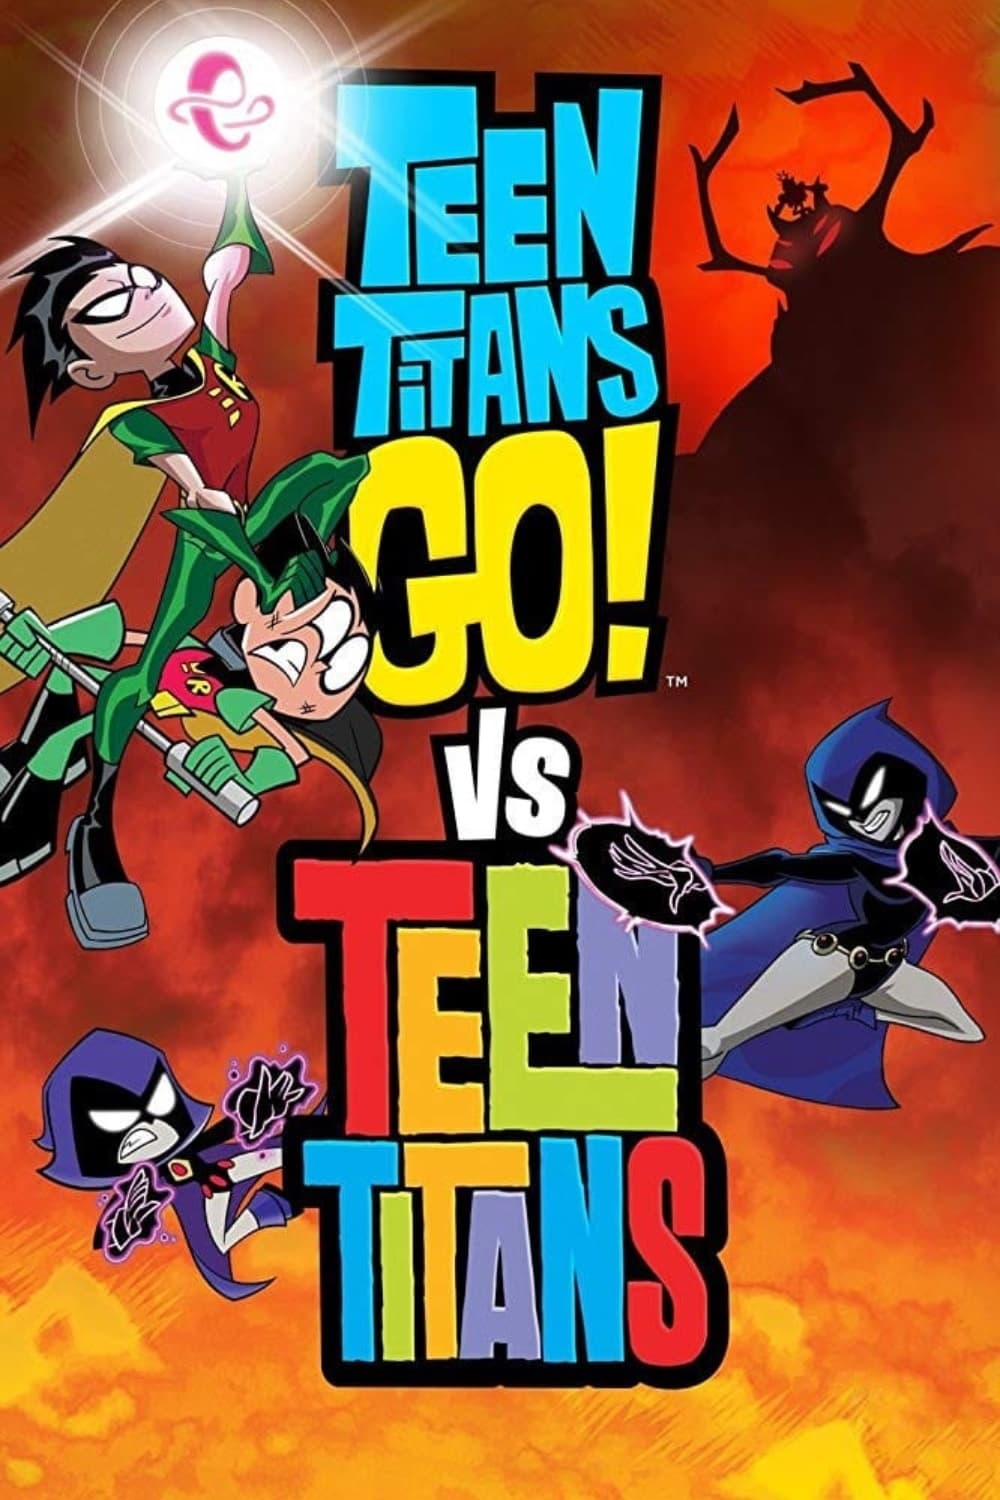 Caratula de Teen Titans Go! vs. Teen Titans (Teen Titans Go! vs. Teen Titans) 